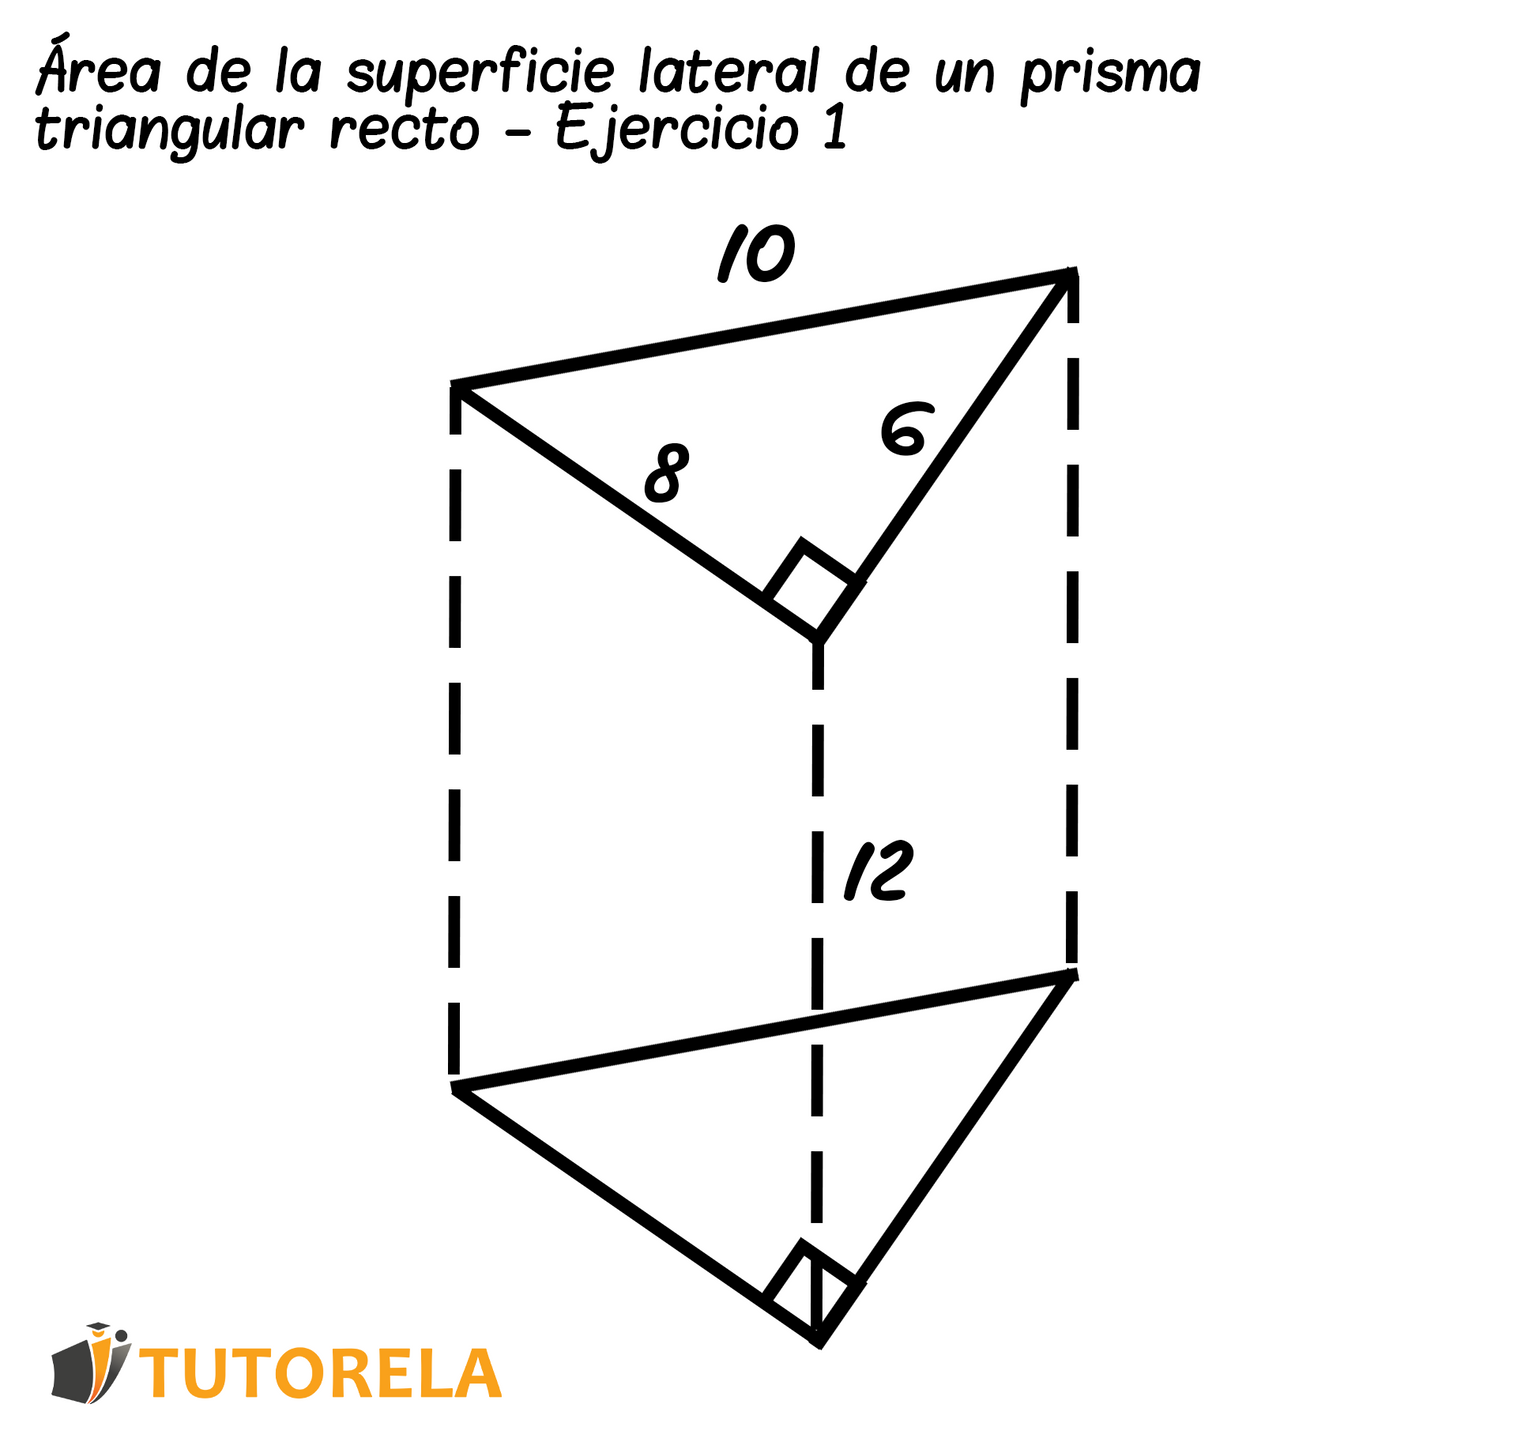 Un prisma triangular recto - Ejercicio 01